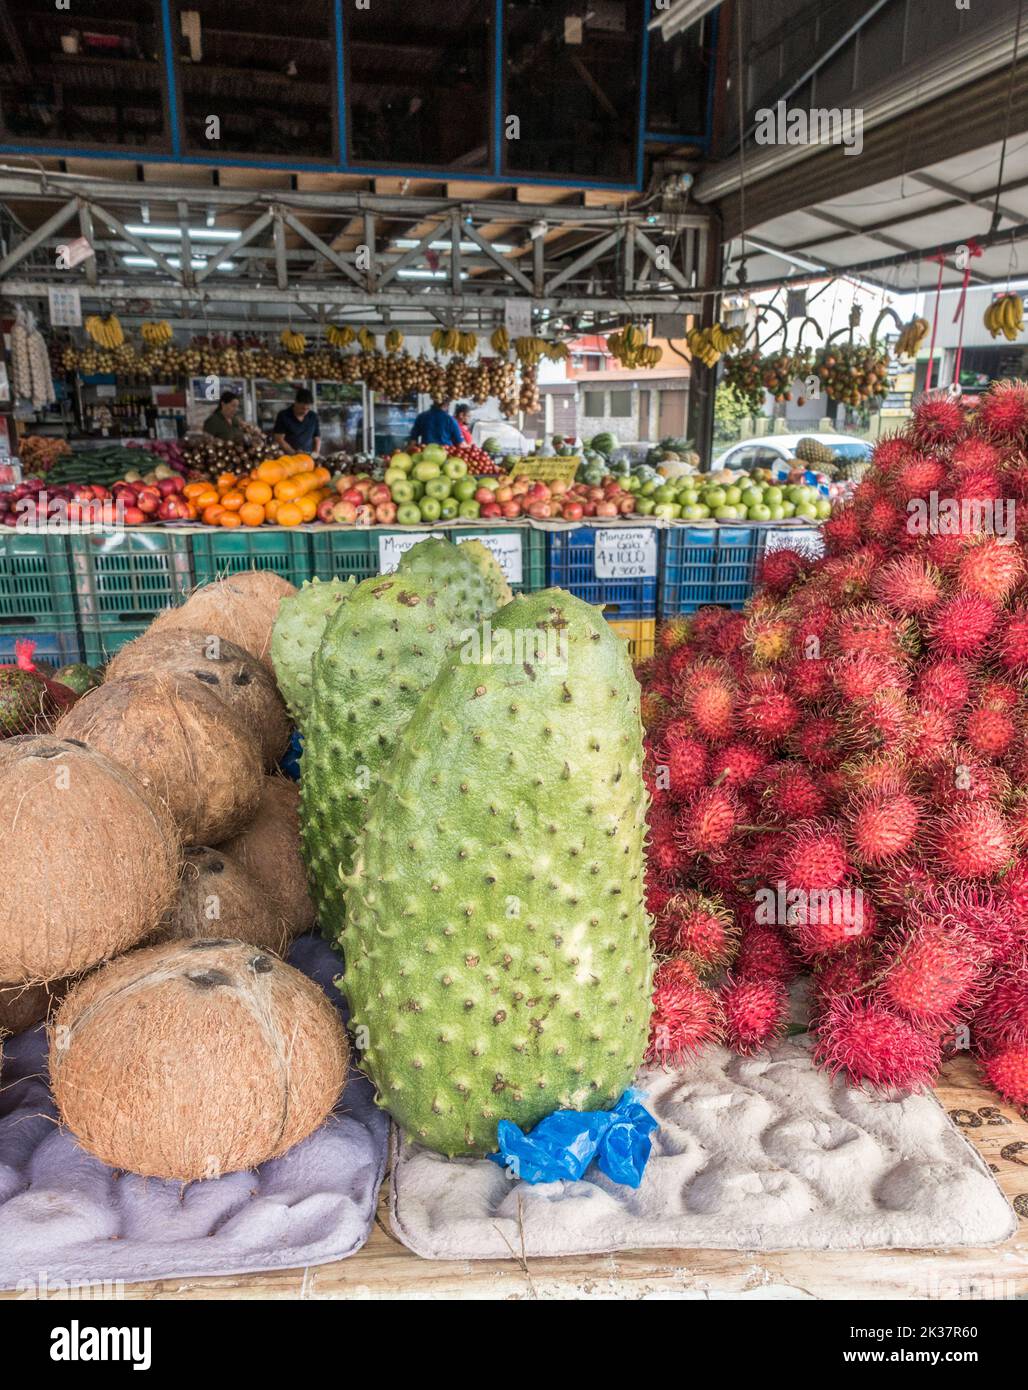 Soursop (Annona muricata), Rambutan (Nephelium lappaceum), Coconuts for sale at a market in Costa Rica. Stock Photo